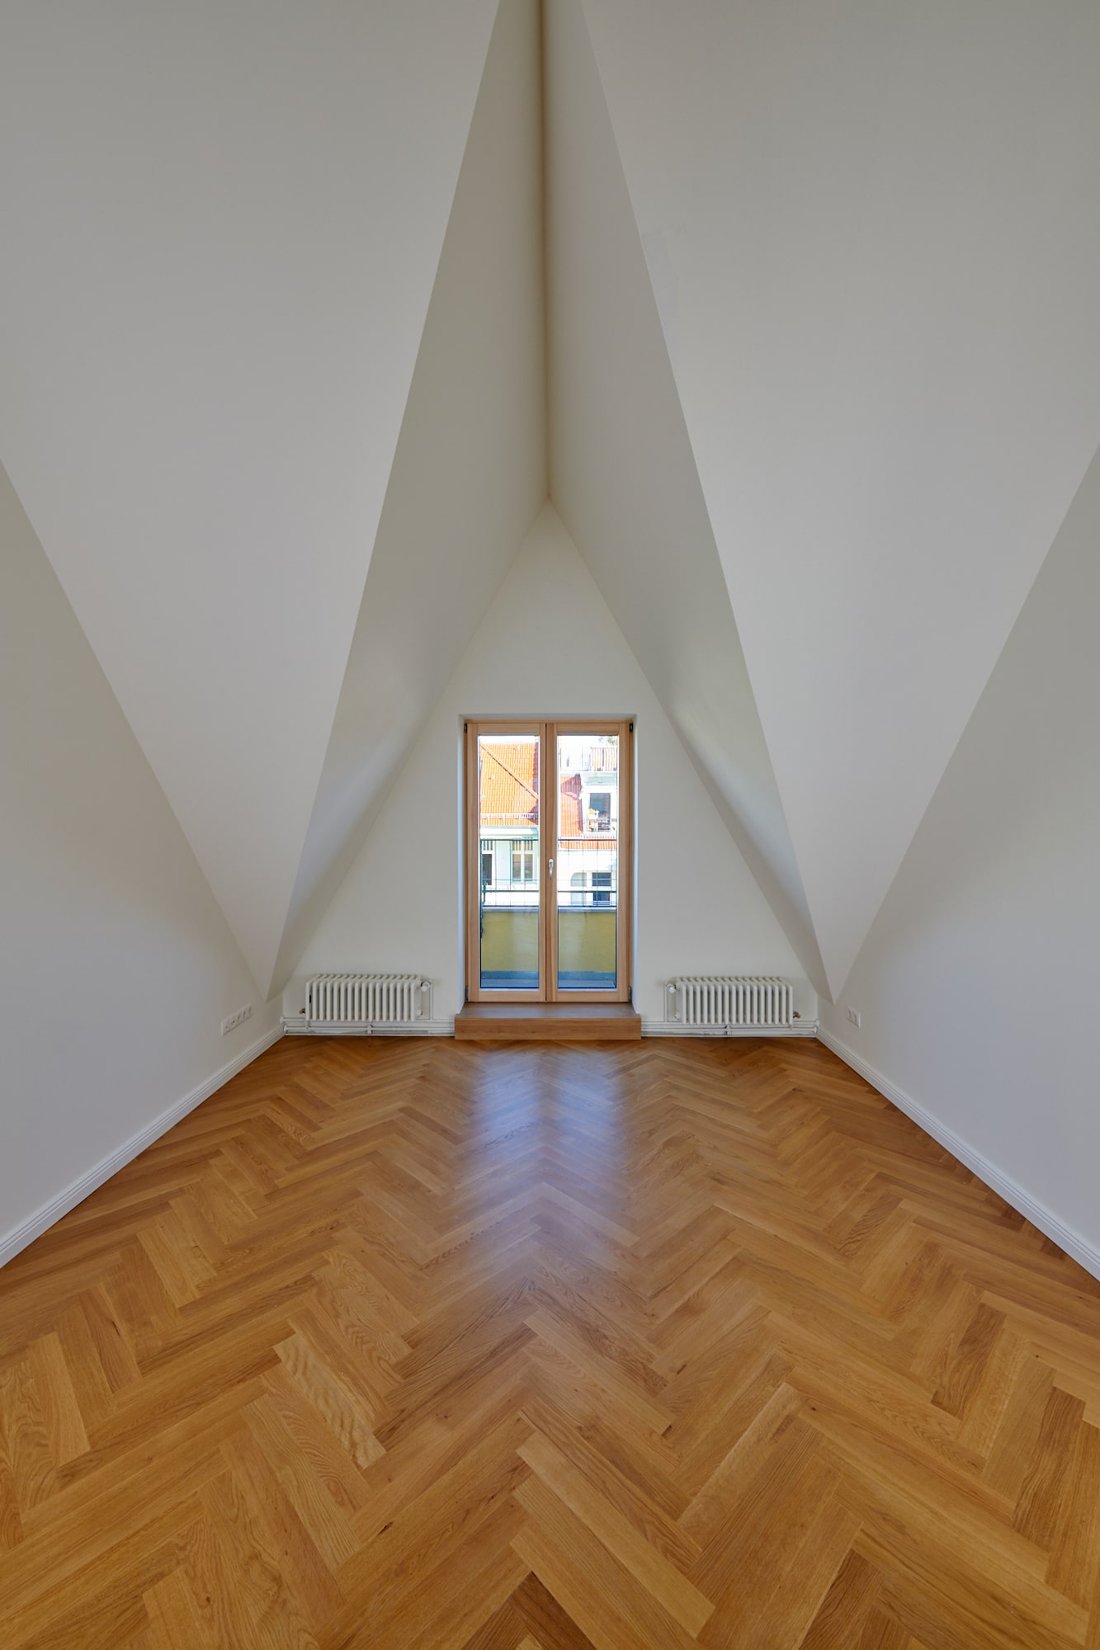 Gabriele Riesner, Architektin, Berlin, Dachgeschossausbau eines Mietshauses in Berlin-Steglitz, Frontspießzimmer